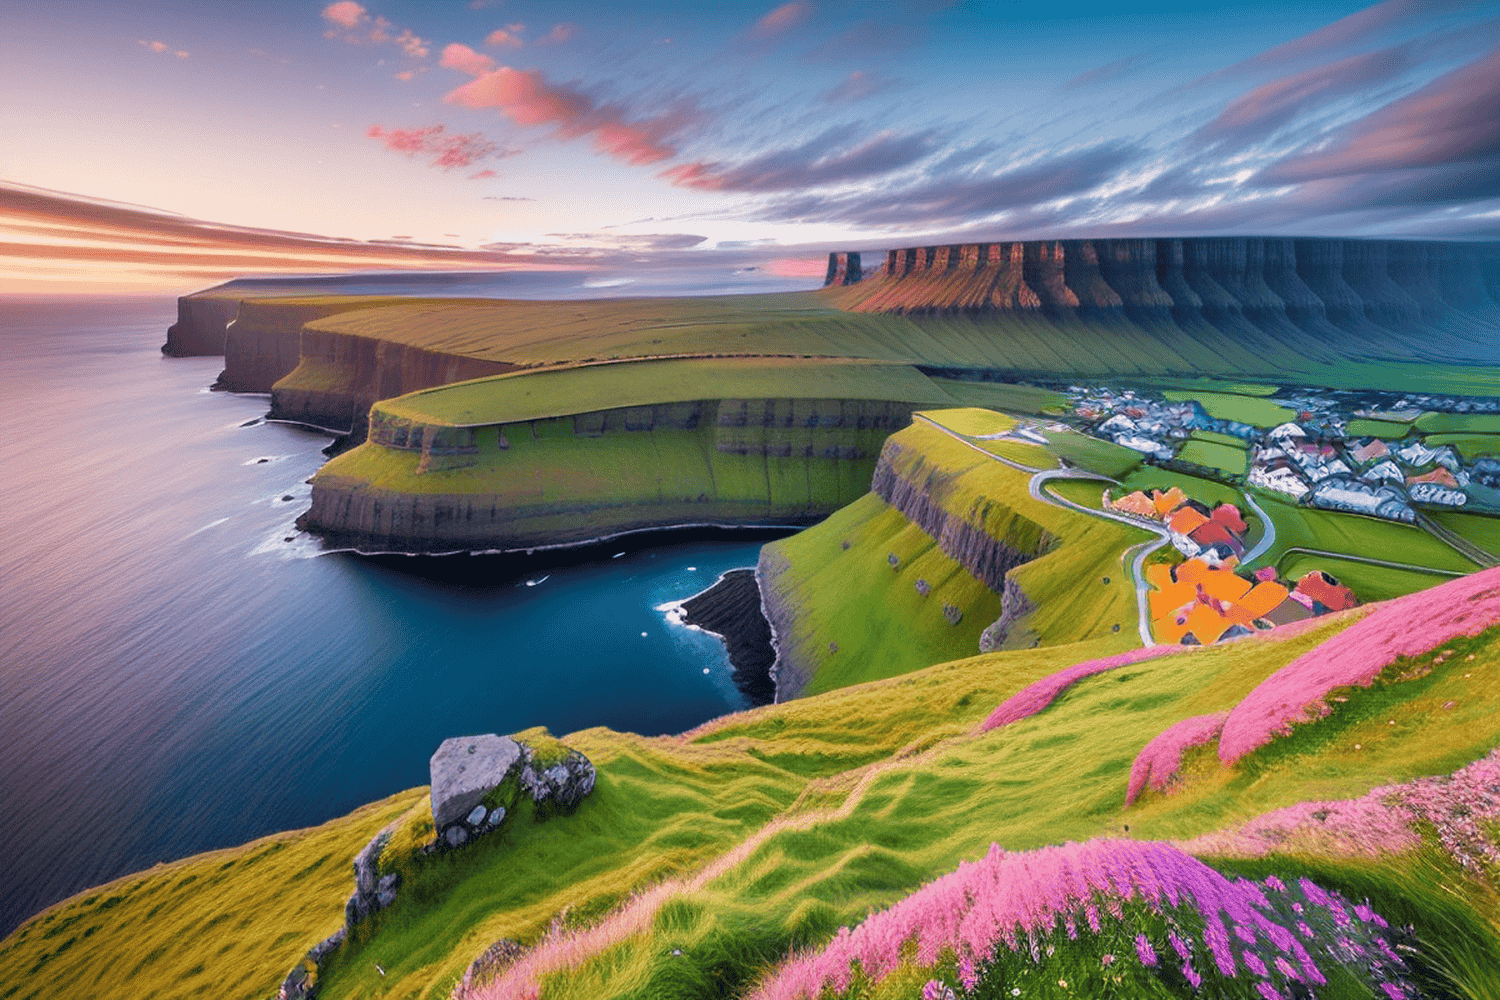 Information about Faroe Islands